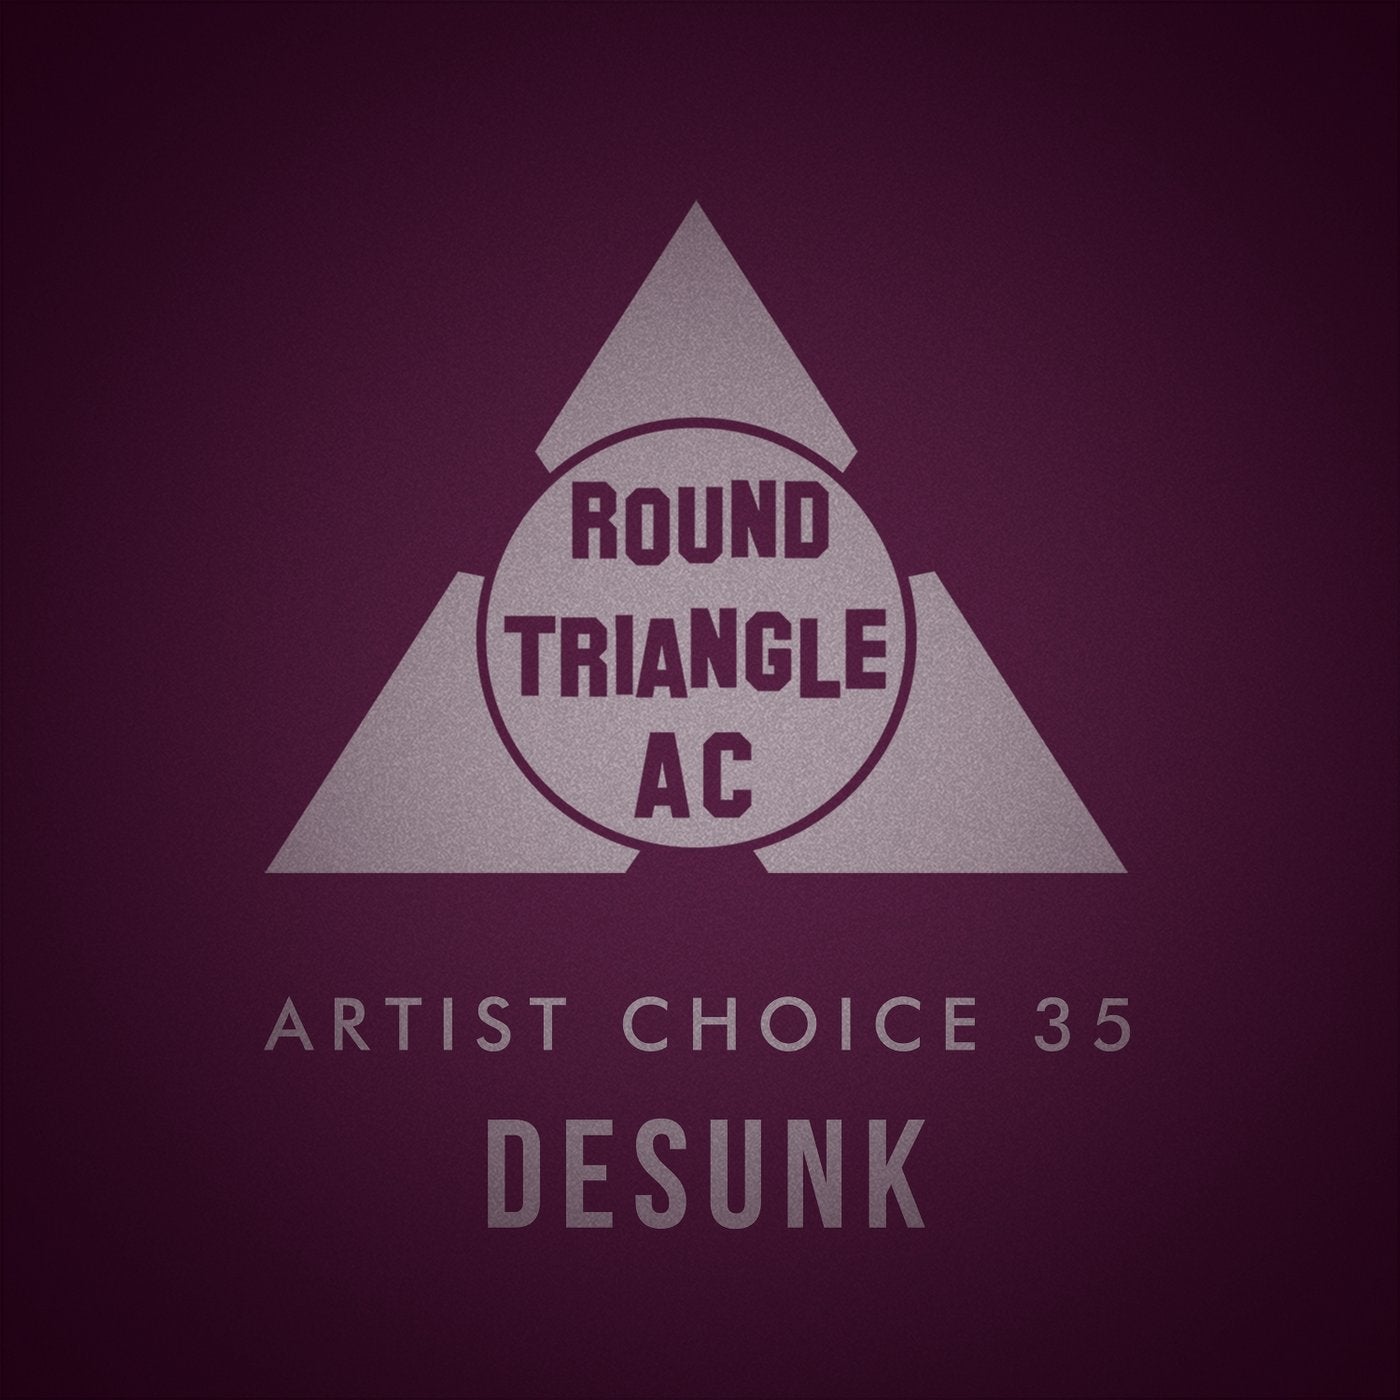 Artist Choice 35: Desunk